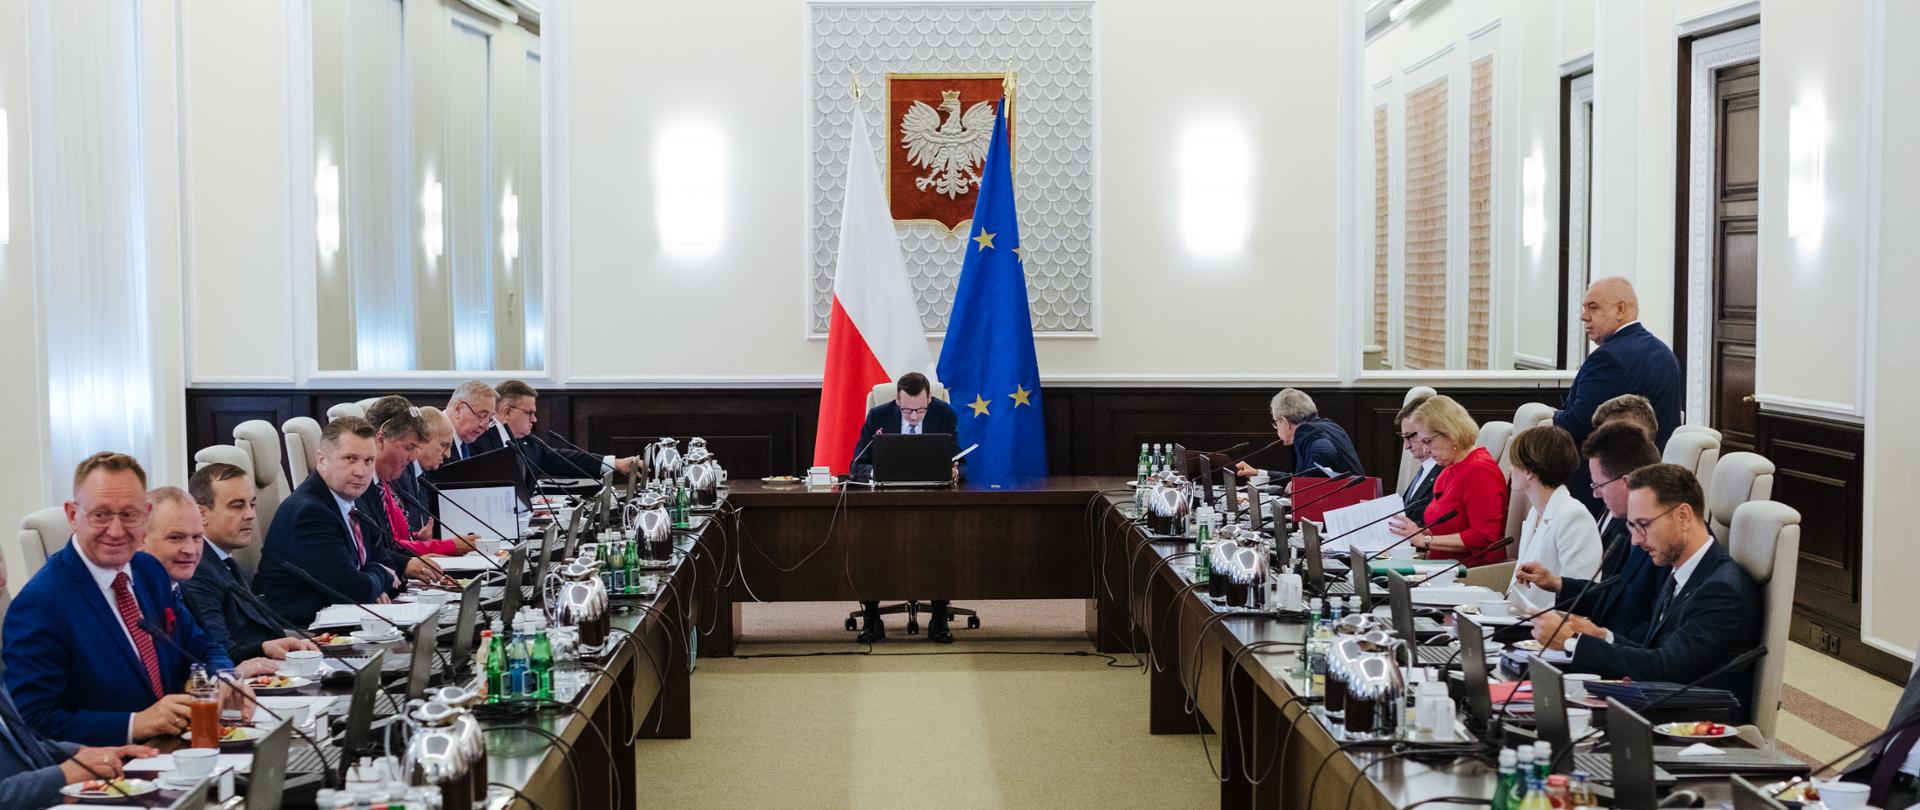 Grupa osób siedzi przy dwóch stołach. Wśród nich jest wiceminister Jadwiga Emilewicz.